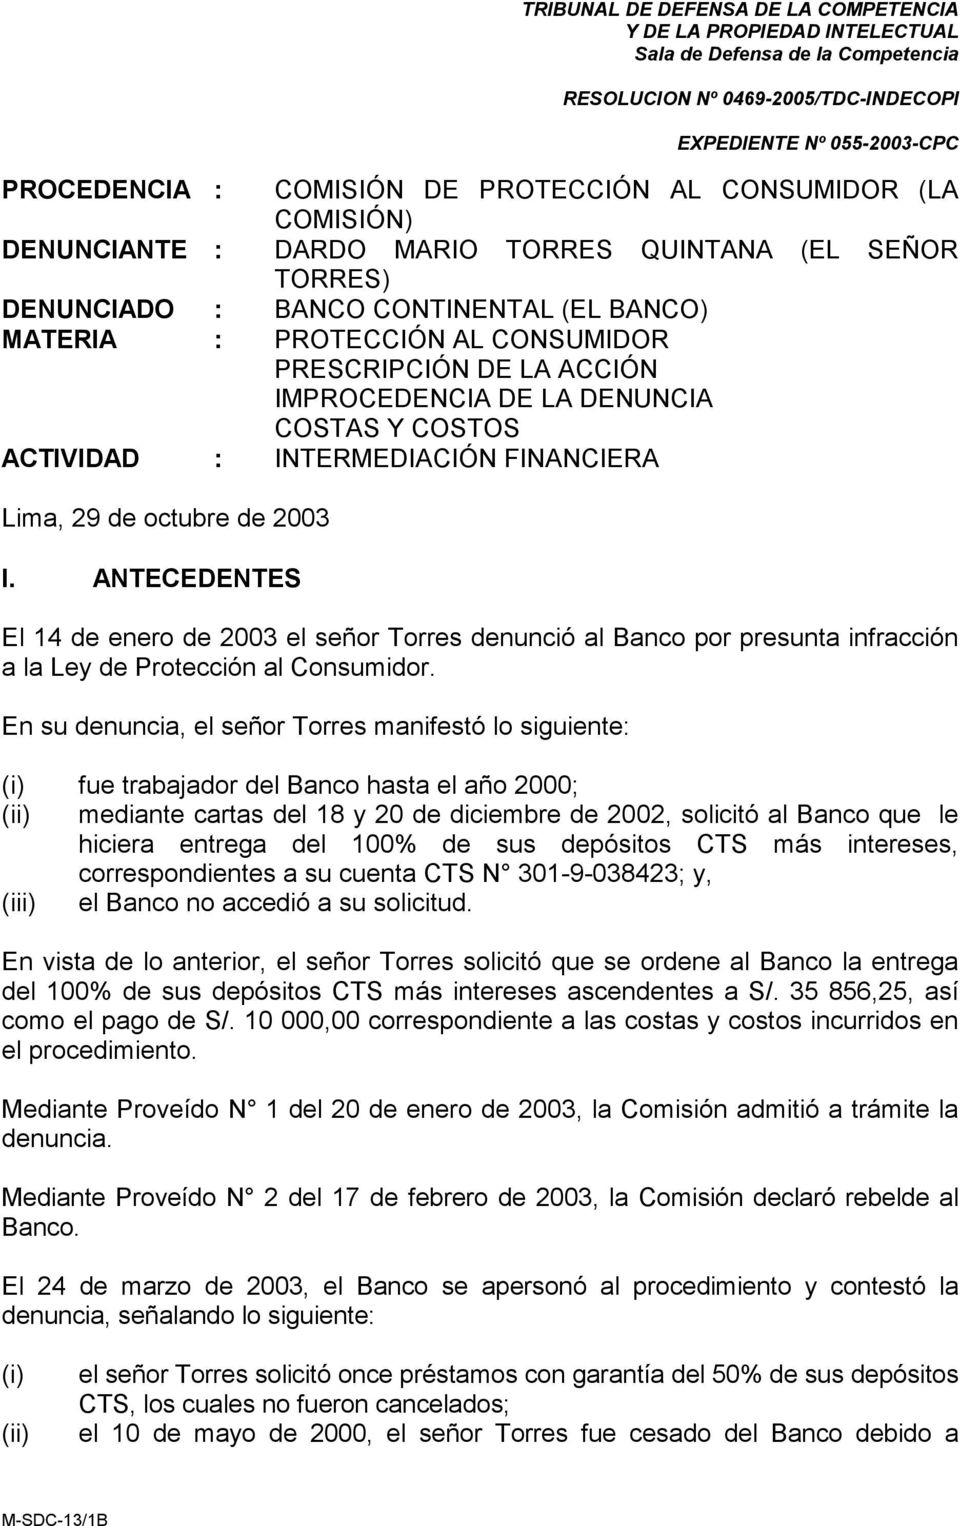 ANTECEDENTES El 14 de enero de 2003 el señor Torres denunció al Banco por presunta infracción a la Ley de Protección al Consumidor.